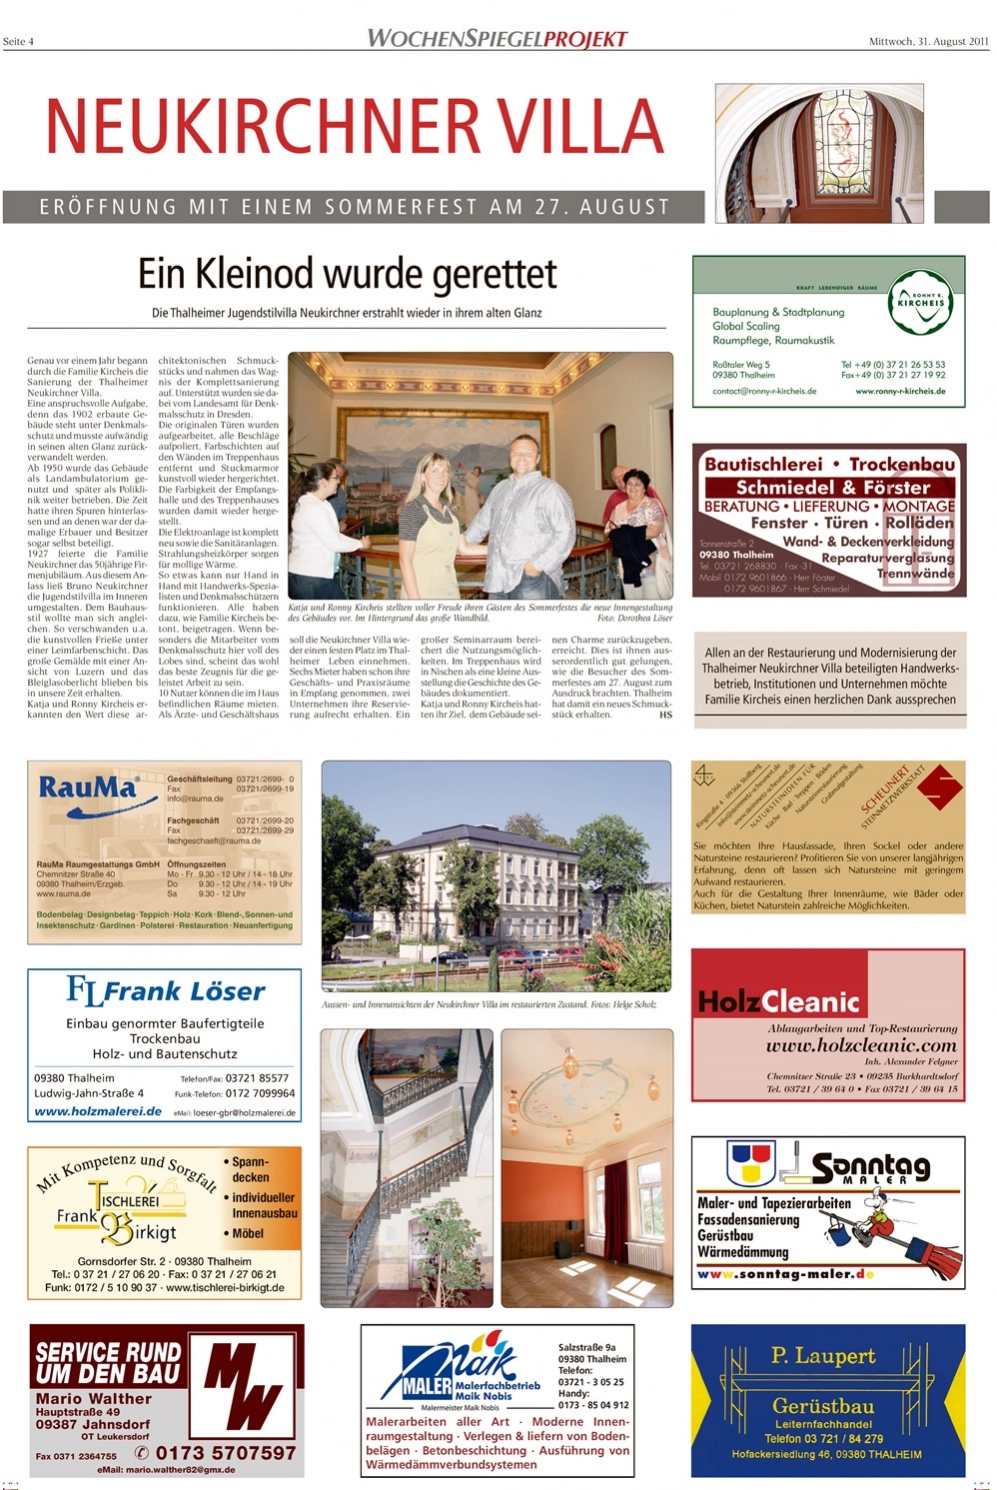 Wochenspiegel 31.08.2011